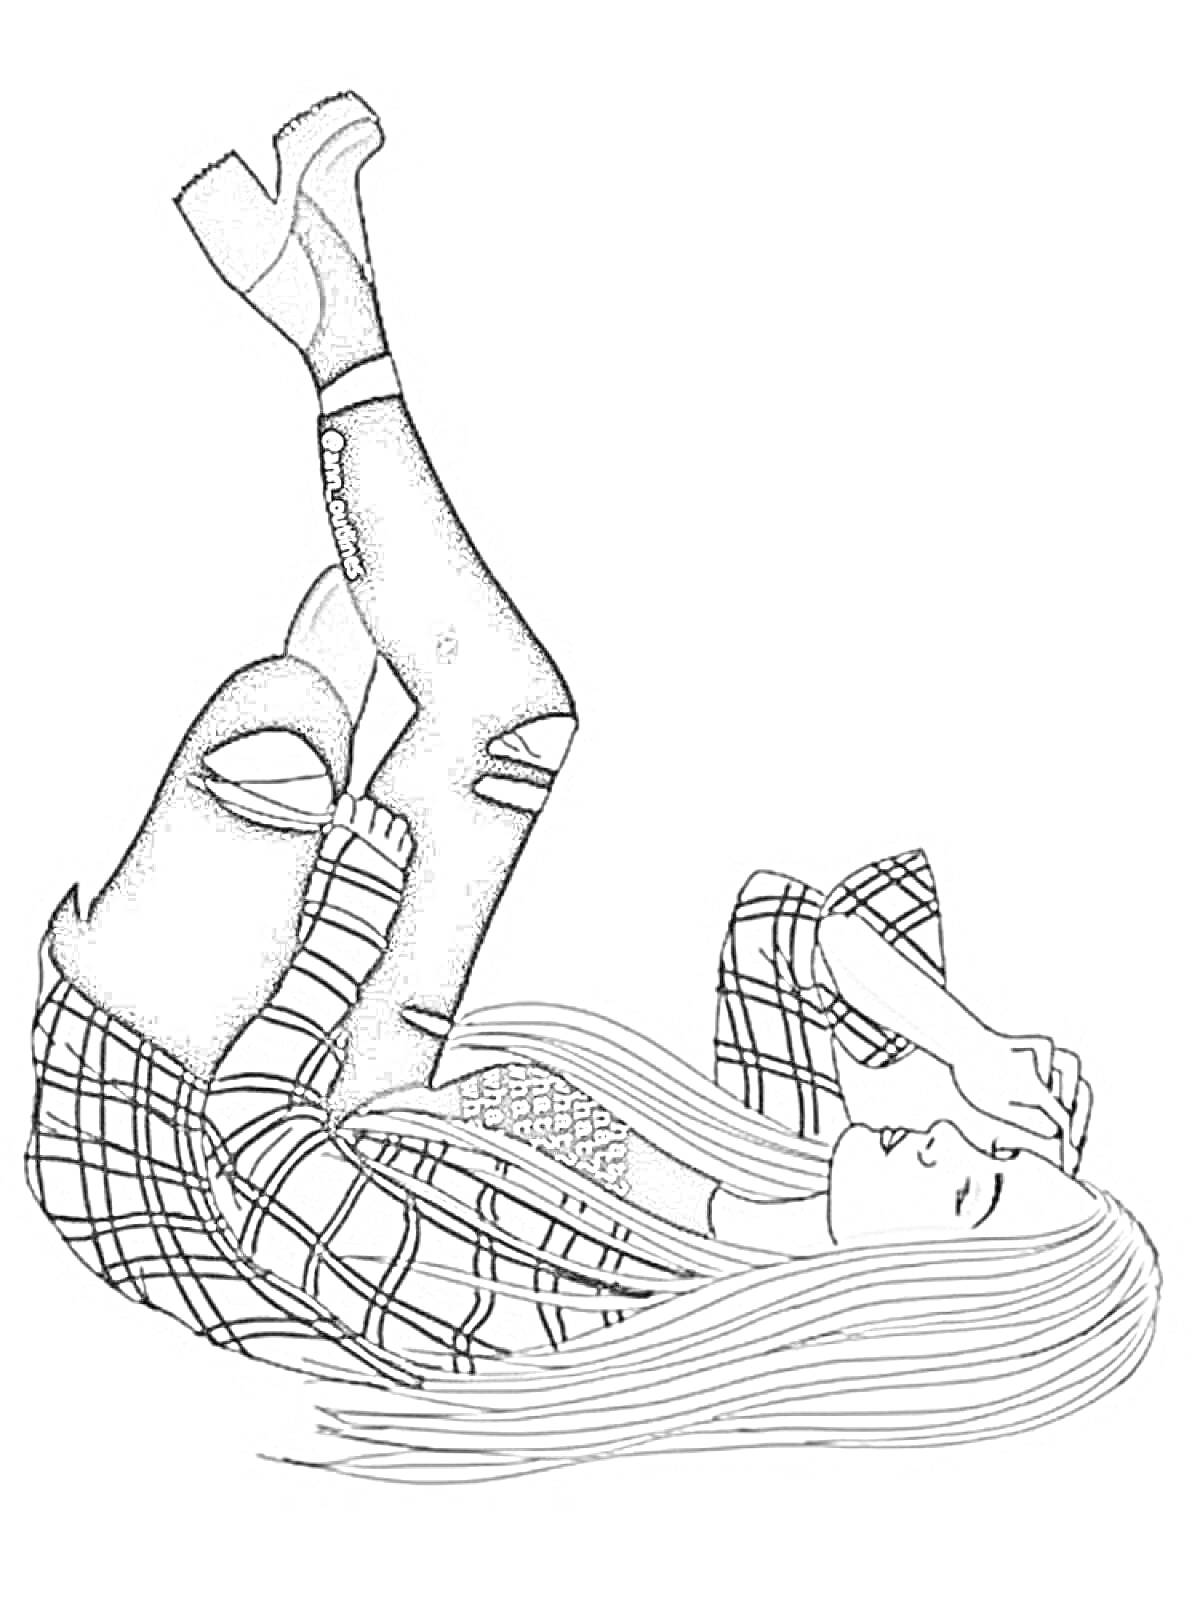 Девушка с длинными волосами в клетчатой рубашке, рваных джинсах и на платформе